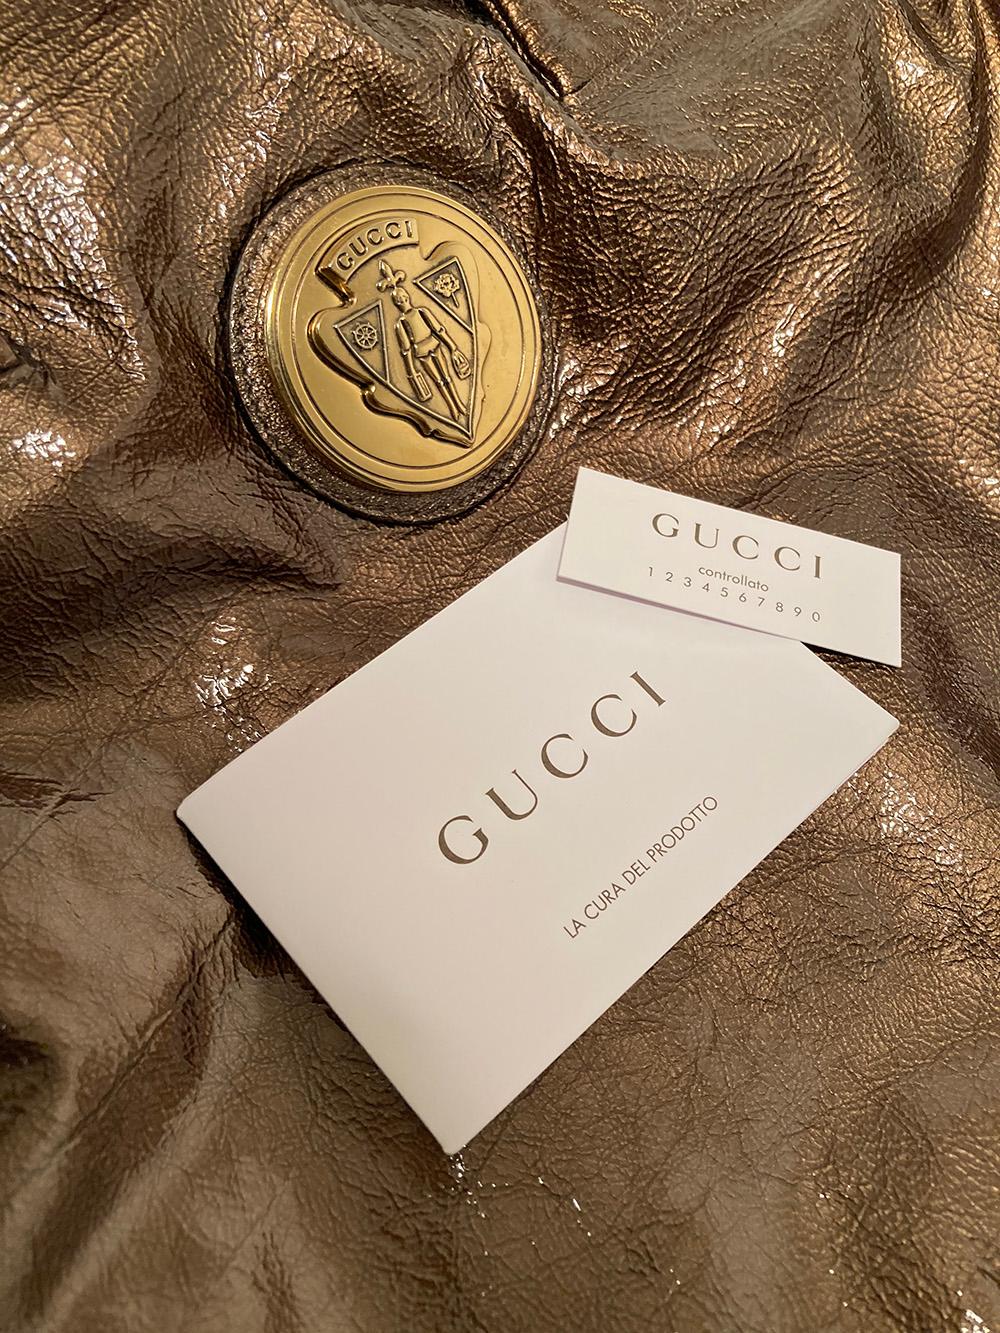 Gucci Bronze Patent Leather Hysteria Bag 2